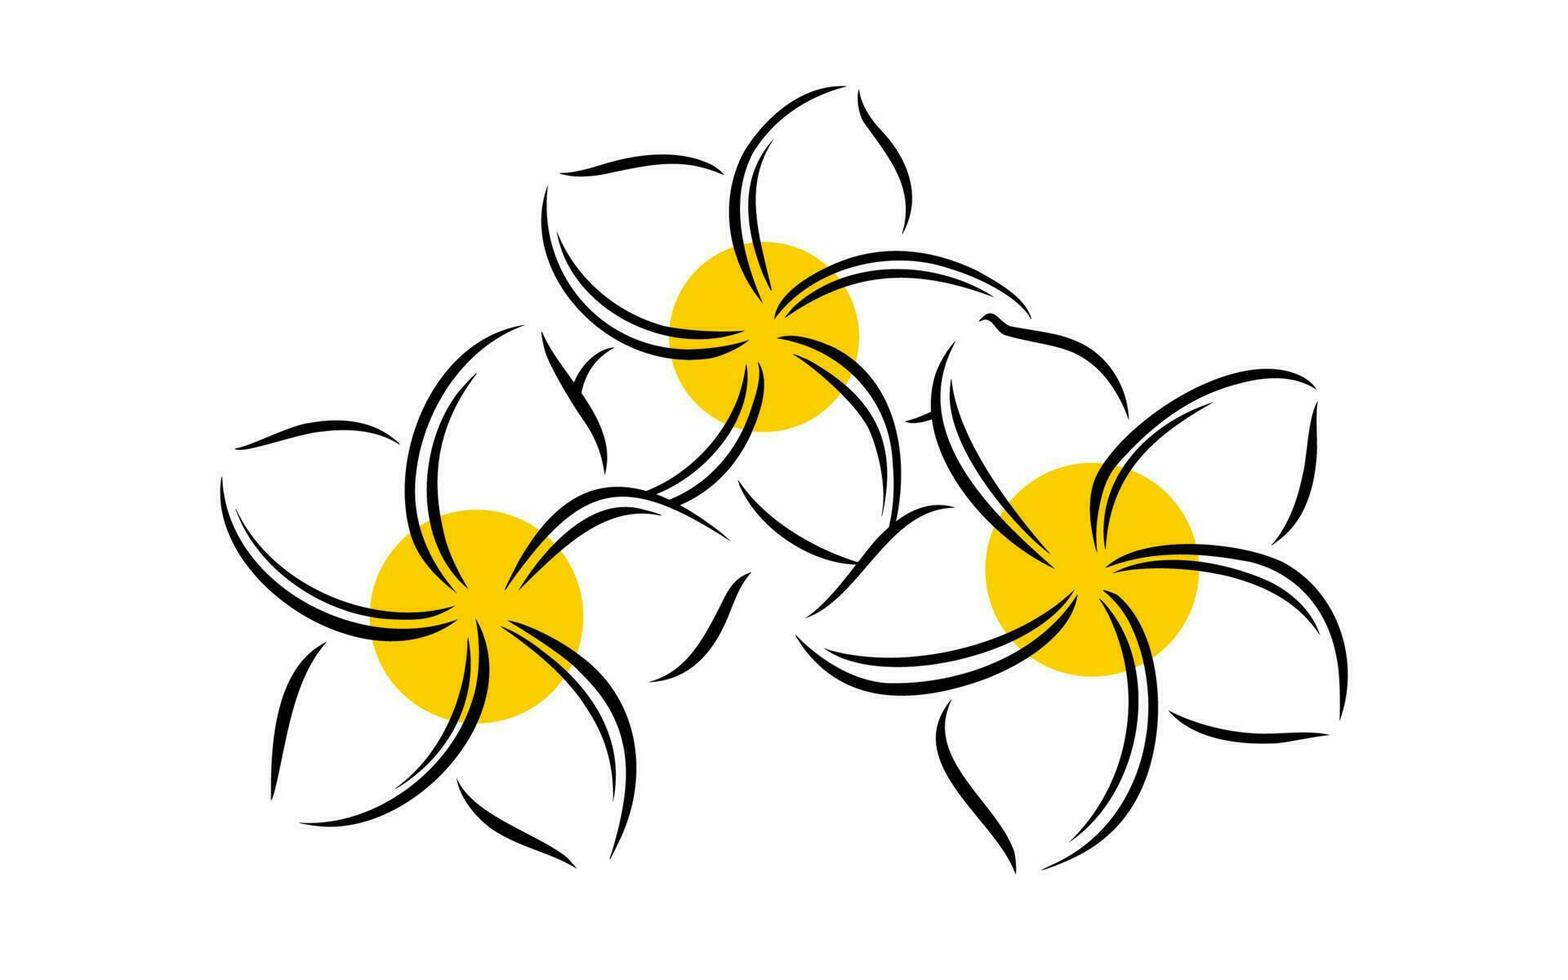 frangipani o plumeria exótico verano flor. grabado frangipani aislado en blanco antecedentes. vector ilustración